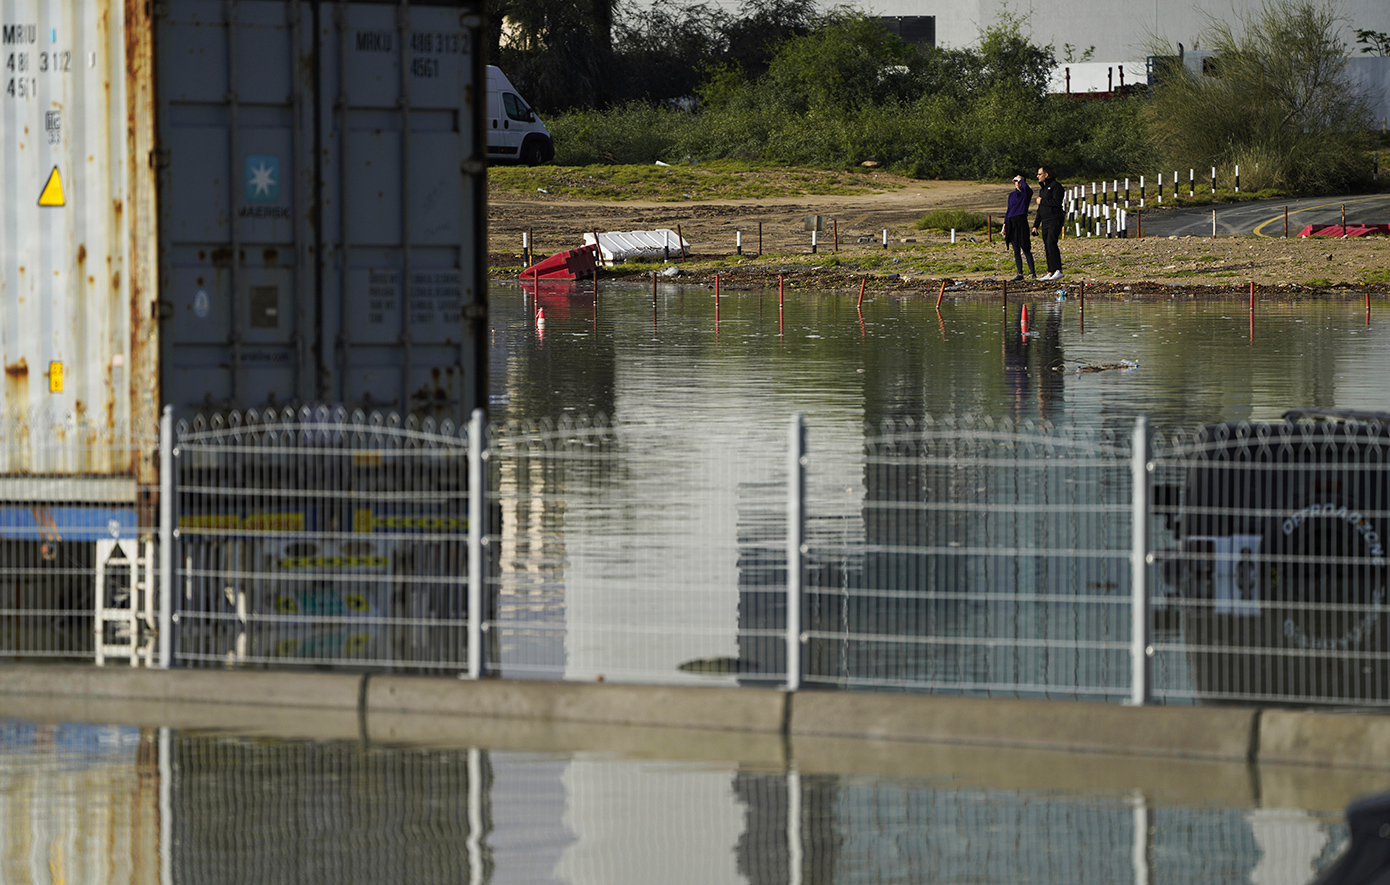 Συμπτώματα που συνδέονται με μολυσμένο νερό εμφάνισαν πολίτες μετά τις πλημμύρες στα ΗΑΕ